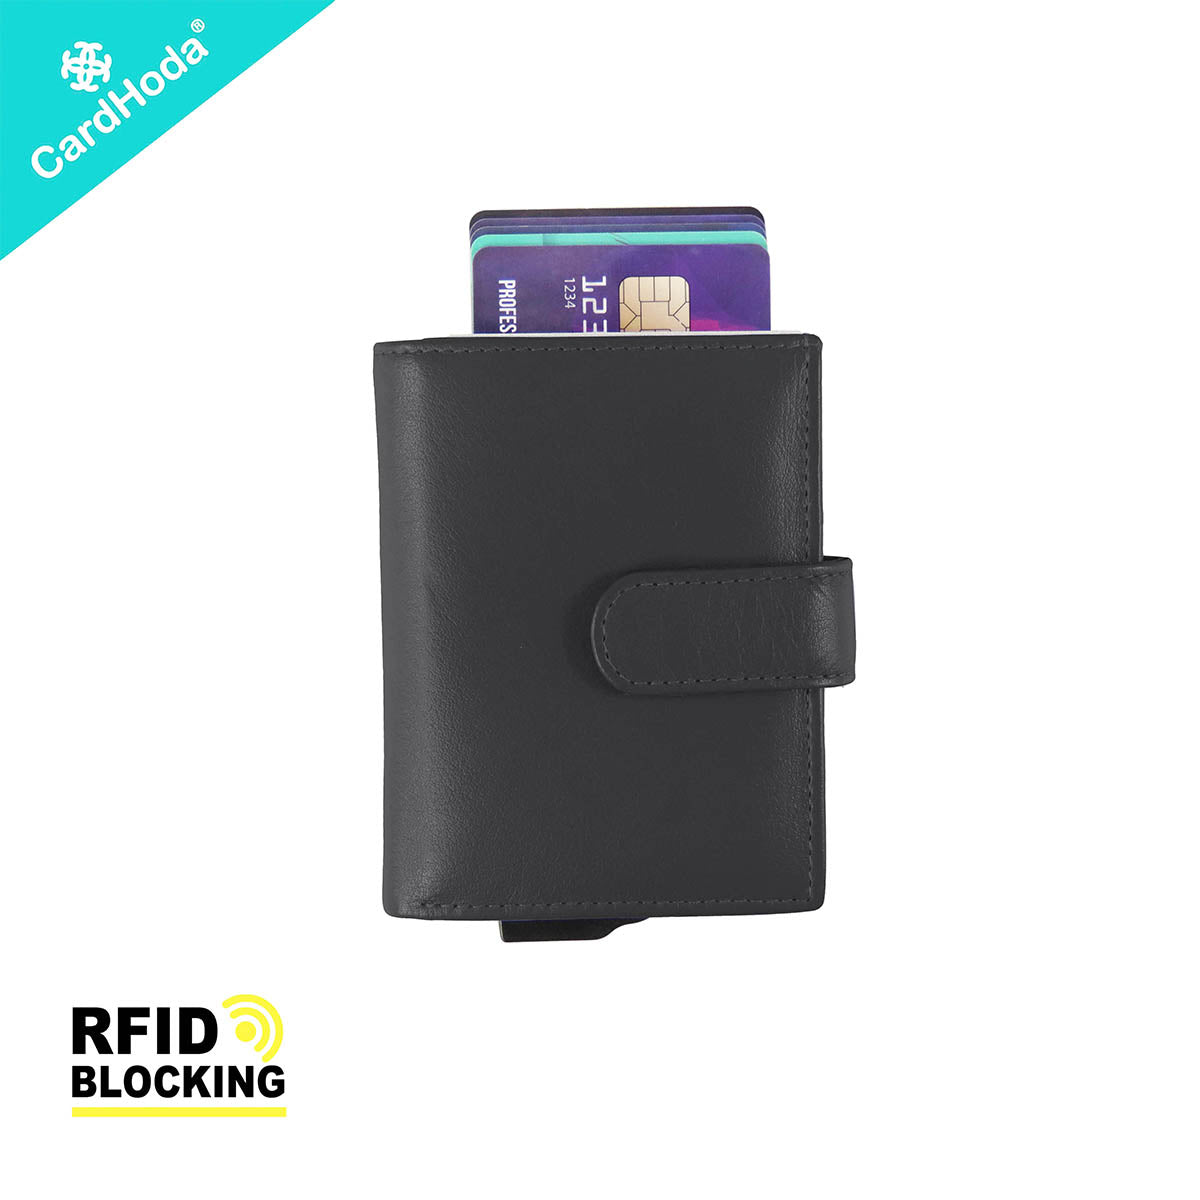 [寄海外] CardHoda - RFID 防盜卡片套真皮銀包（灰色 / 藍色 / 啡色 / 黑色）18-893-H10001